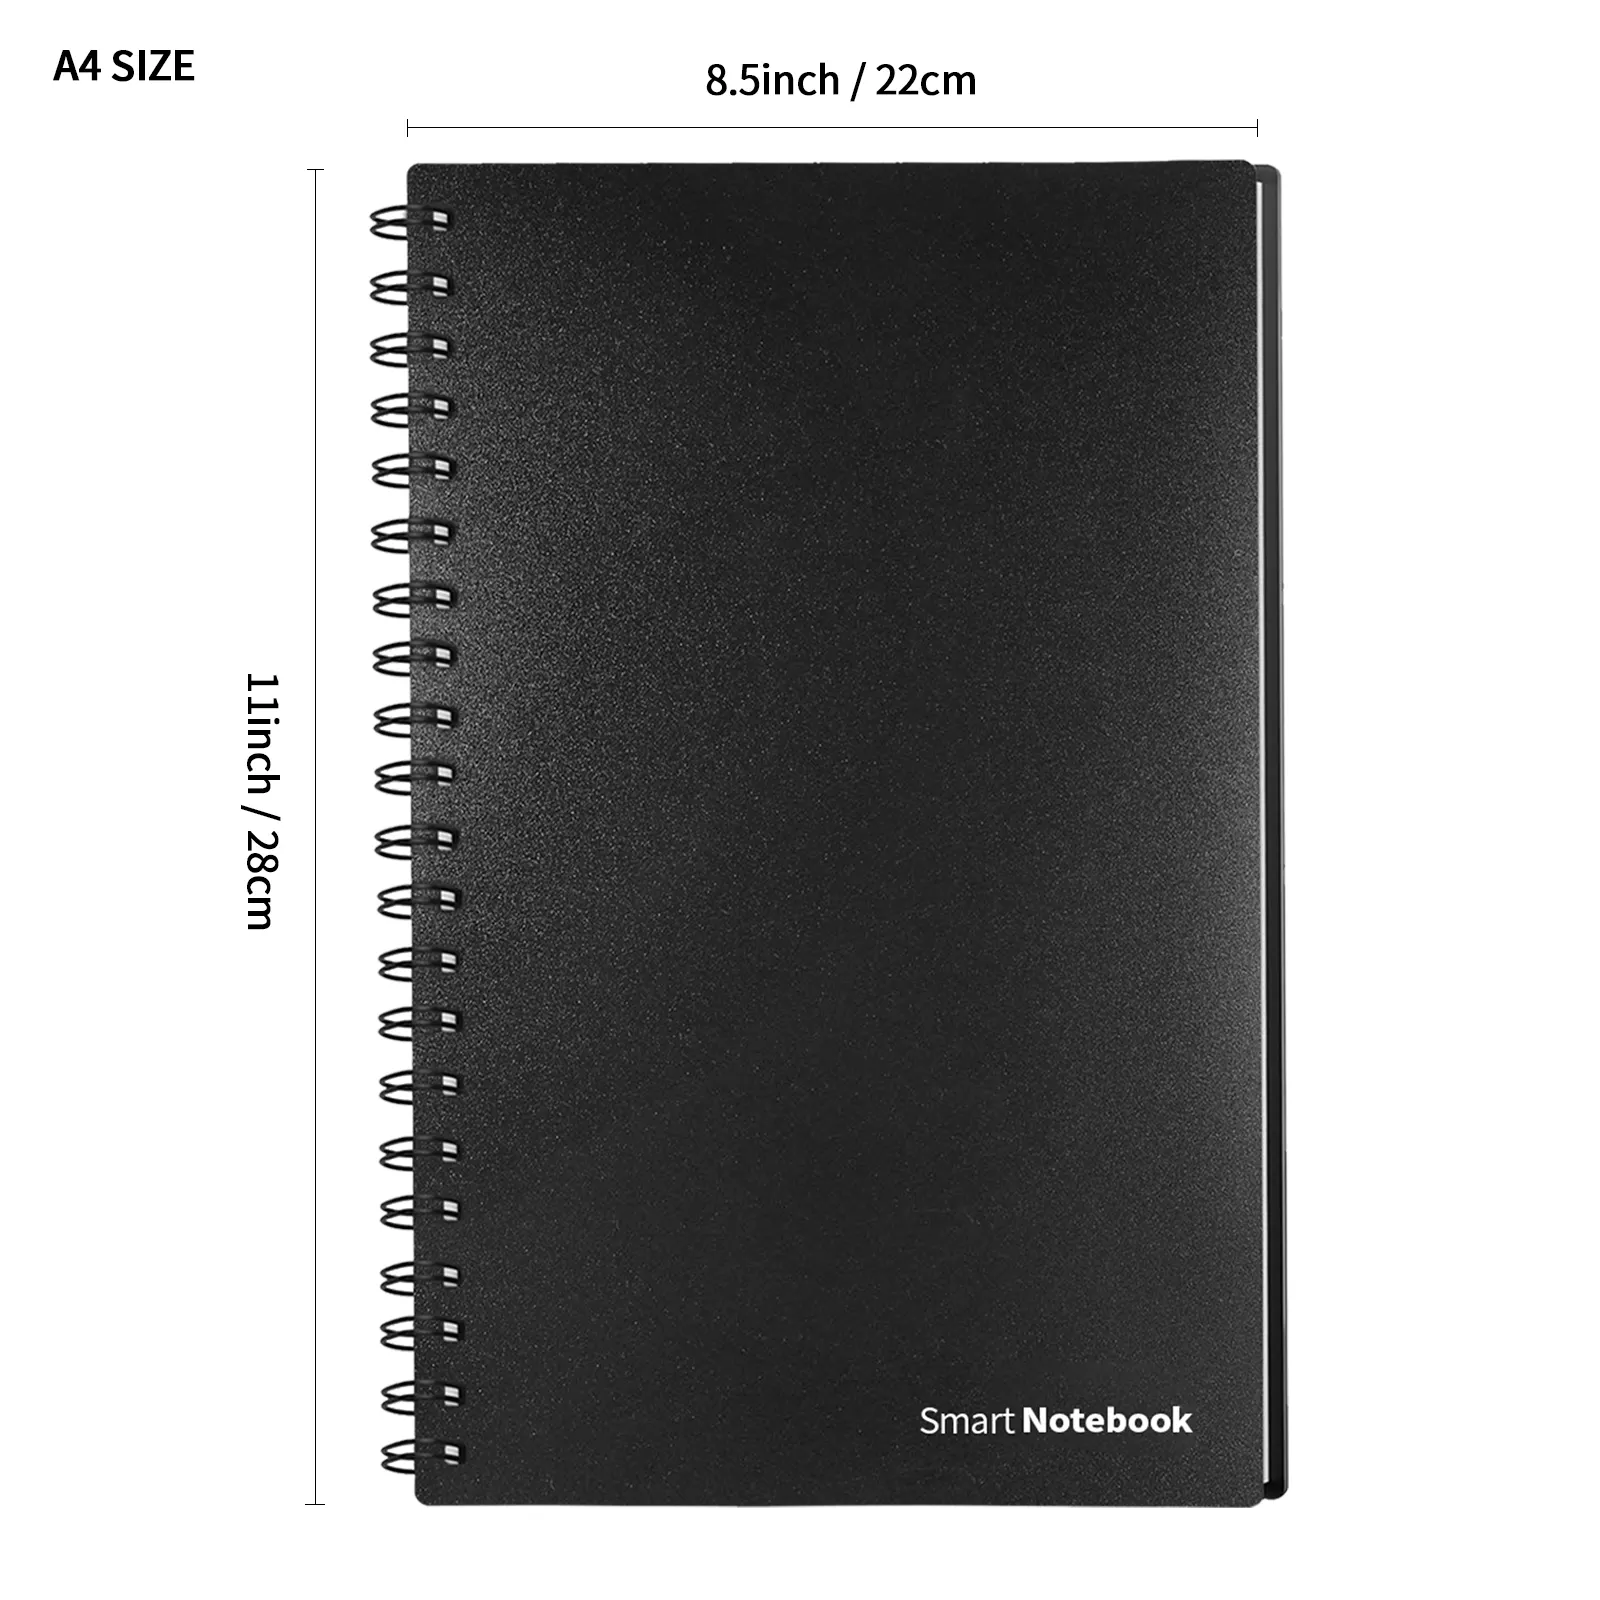 Newyes bloco de notas eco amigável, tamanho a4, grade de ponto, quente e molhado, notebook inteligente para estudantes